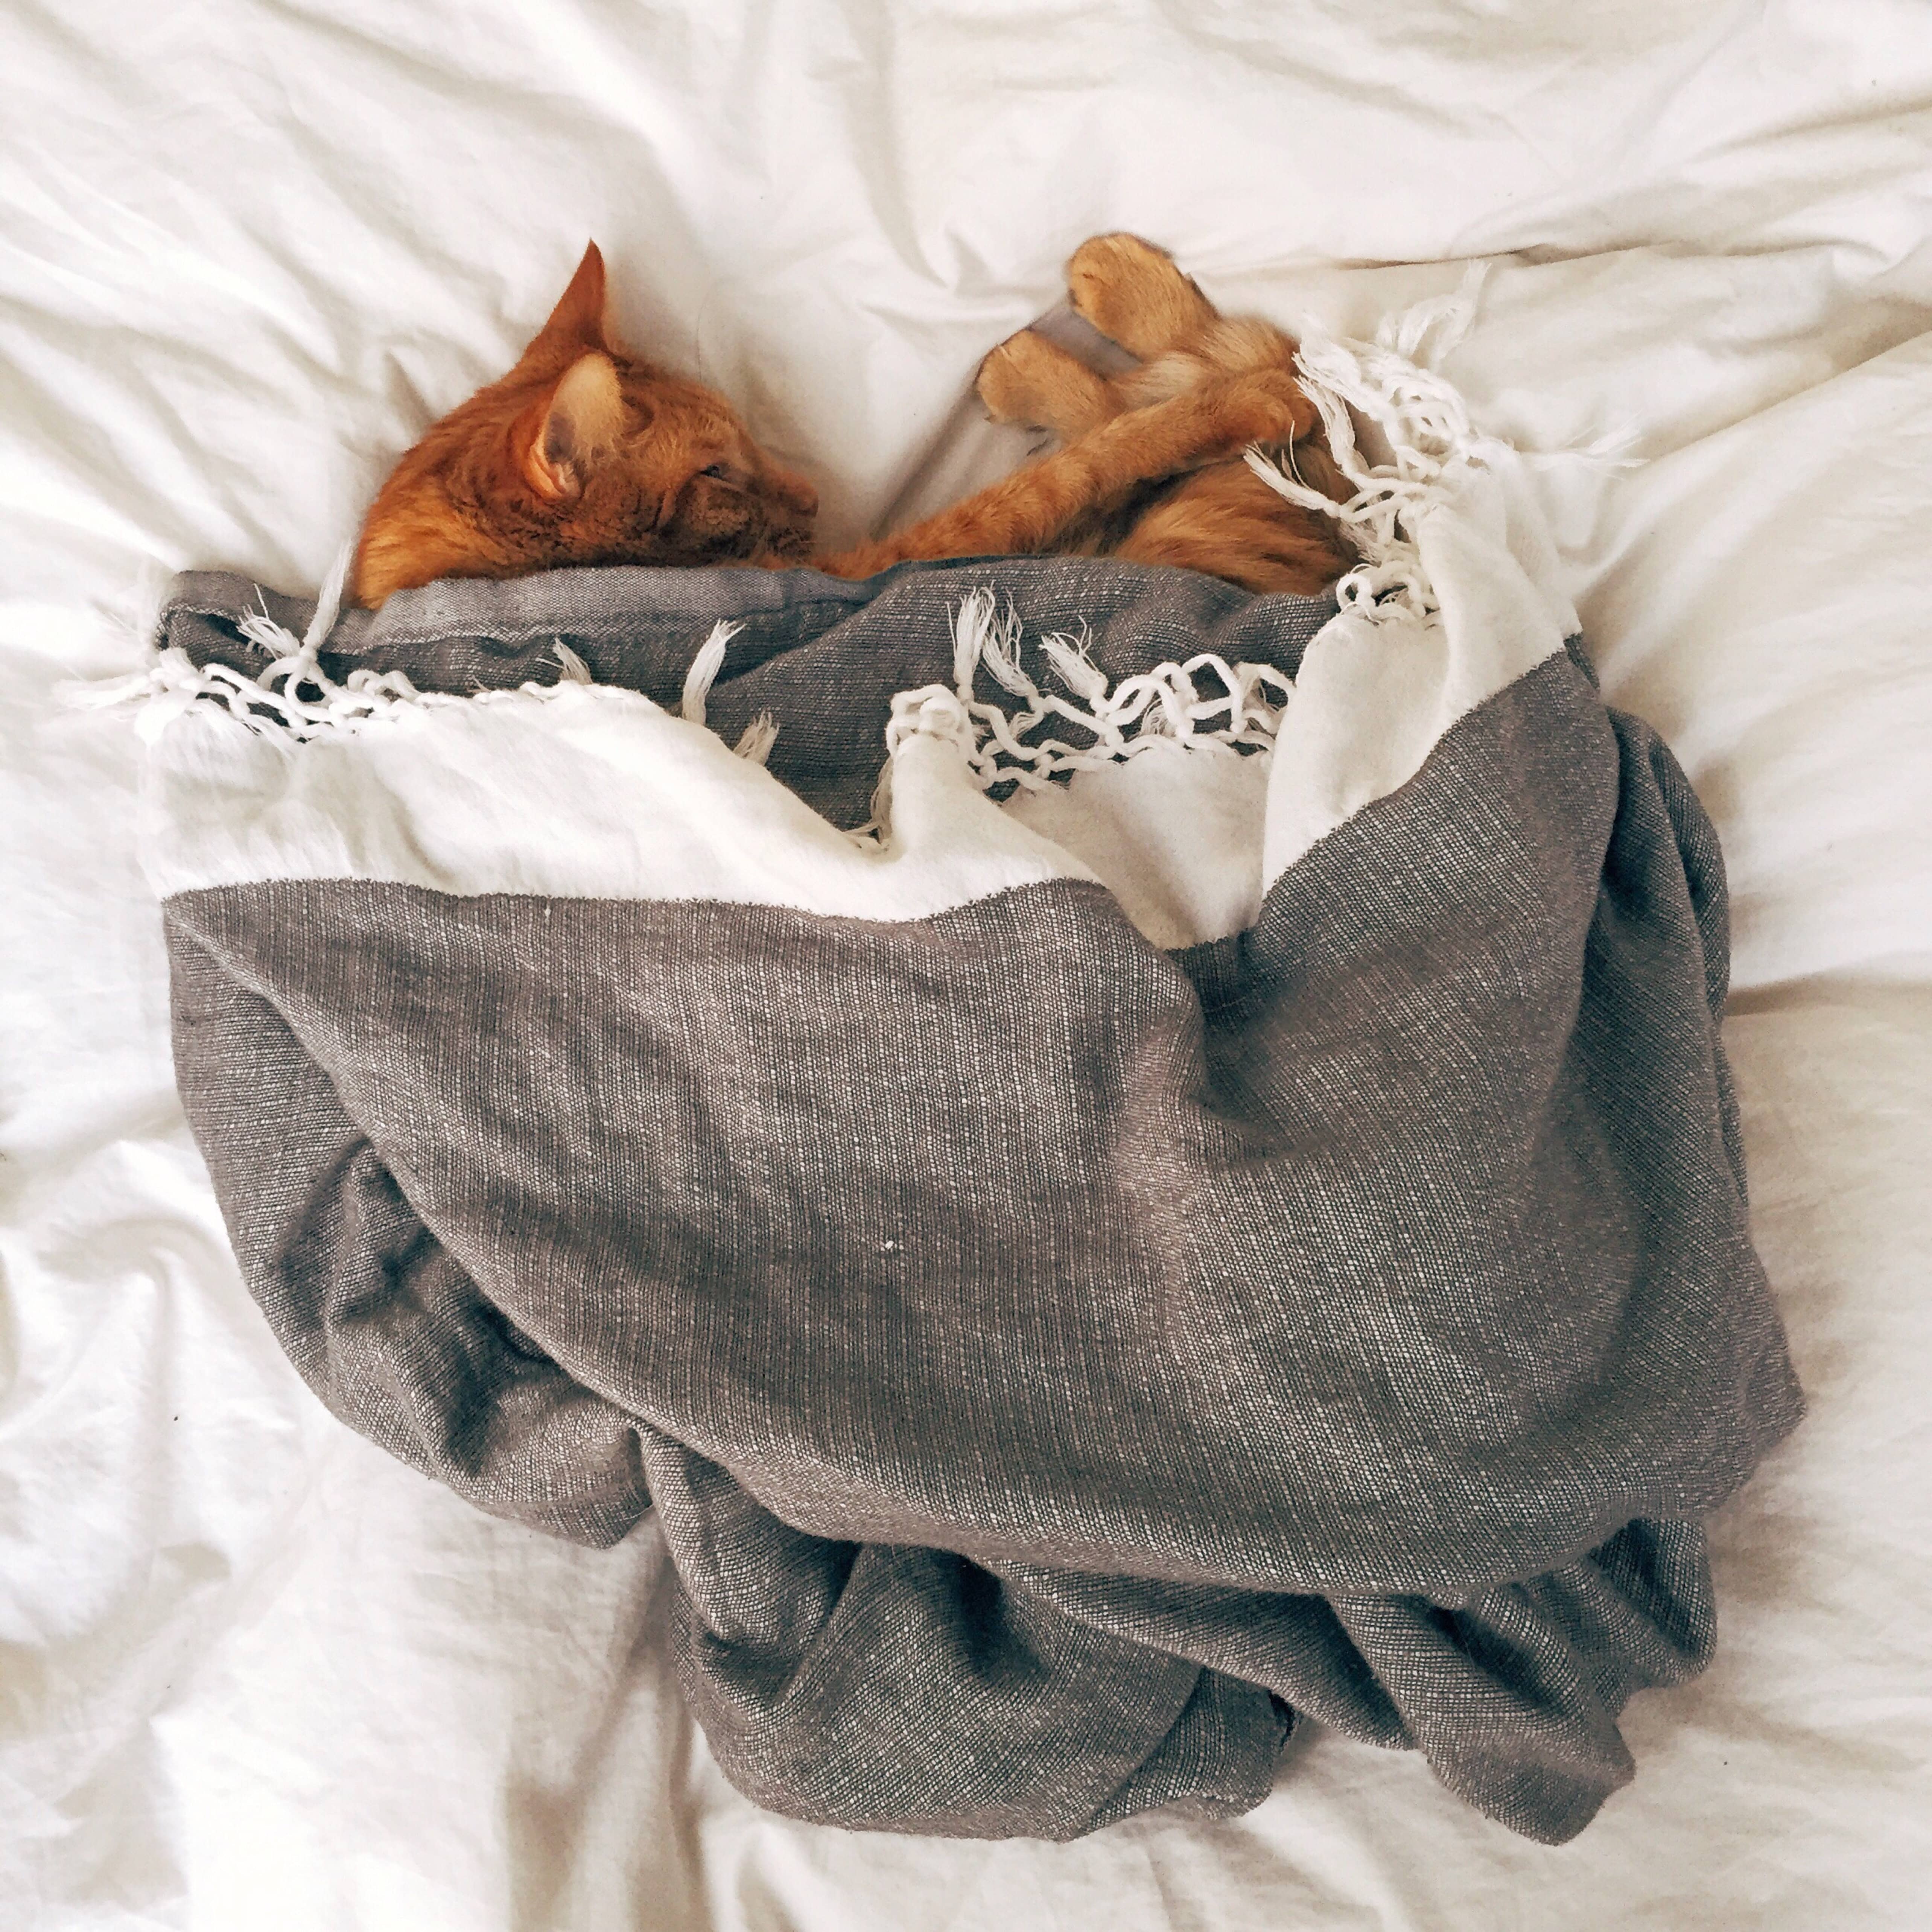 A importância de usar um travesseiro específico para pets